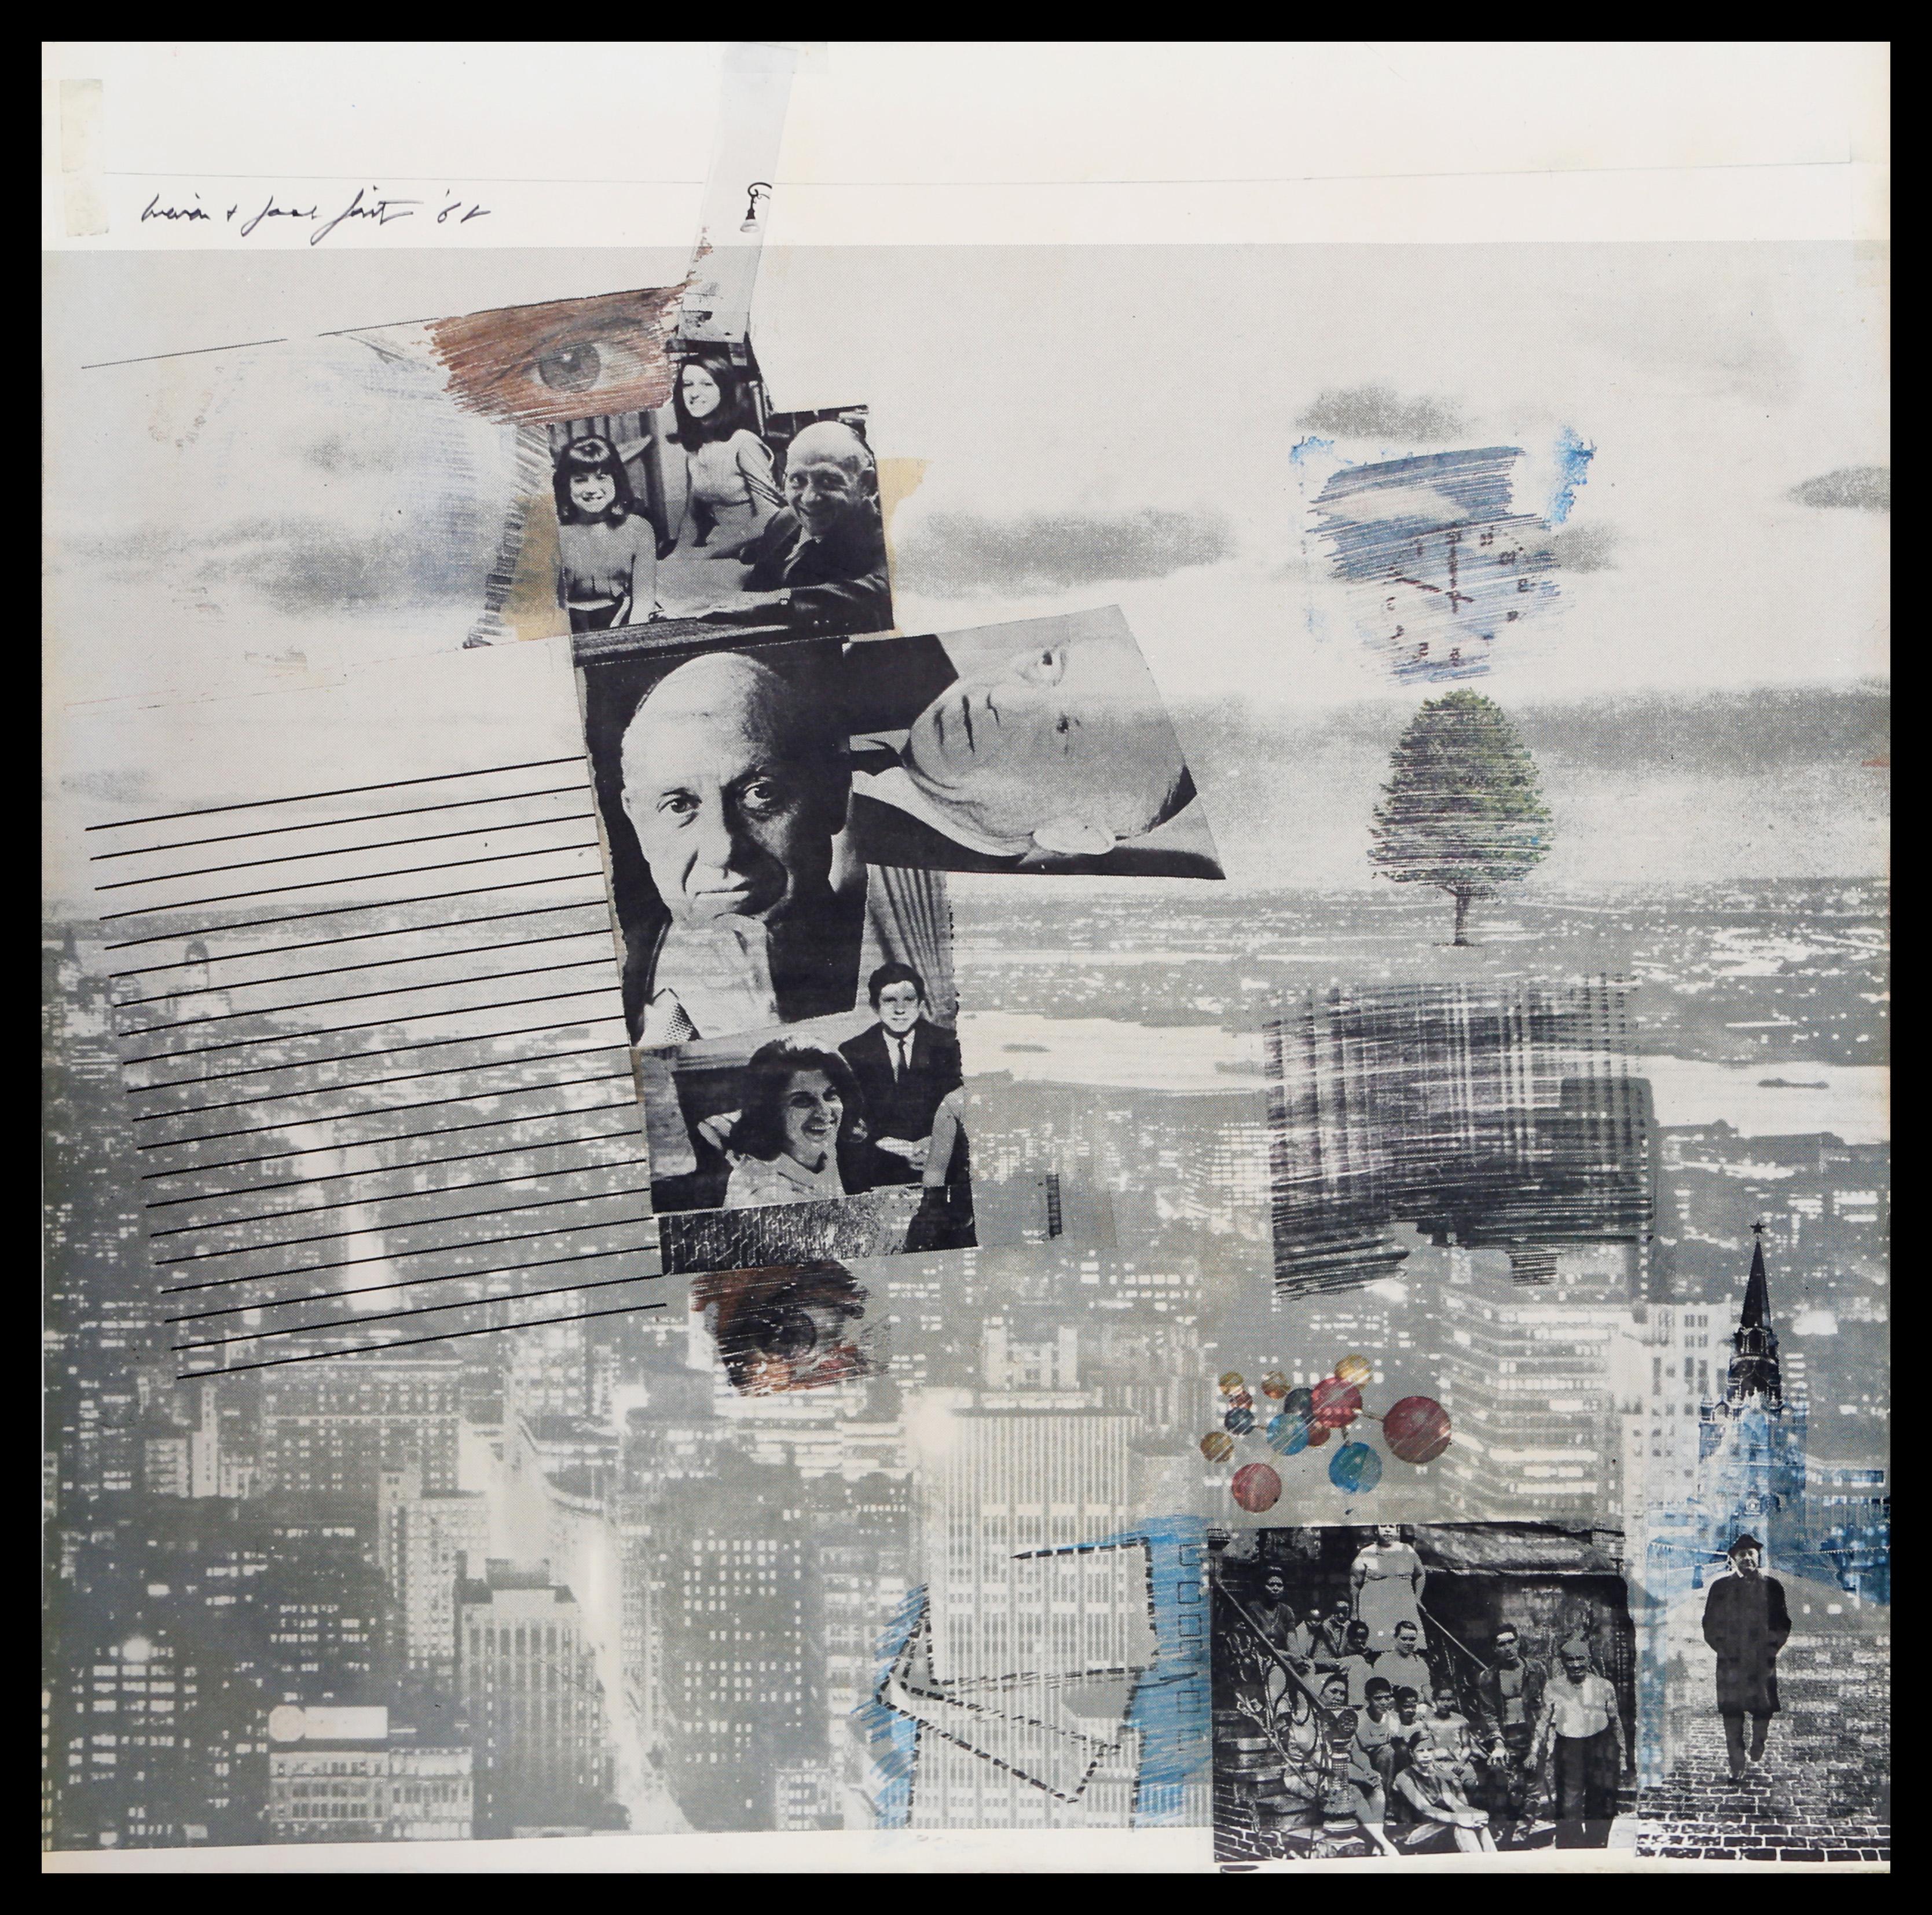 Composition ressemblant à un collage, créée par l'artiste pop américain Robert Rauschenberg. De multiples images de personnalités américaines, telles que la famille Whiting, sont superposées à une image blanche et grise d'une ville vue d'en haut.